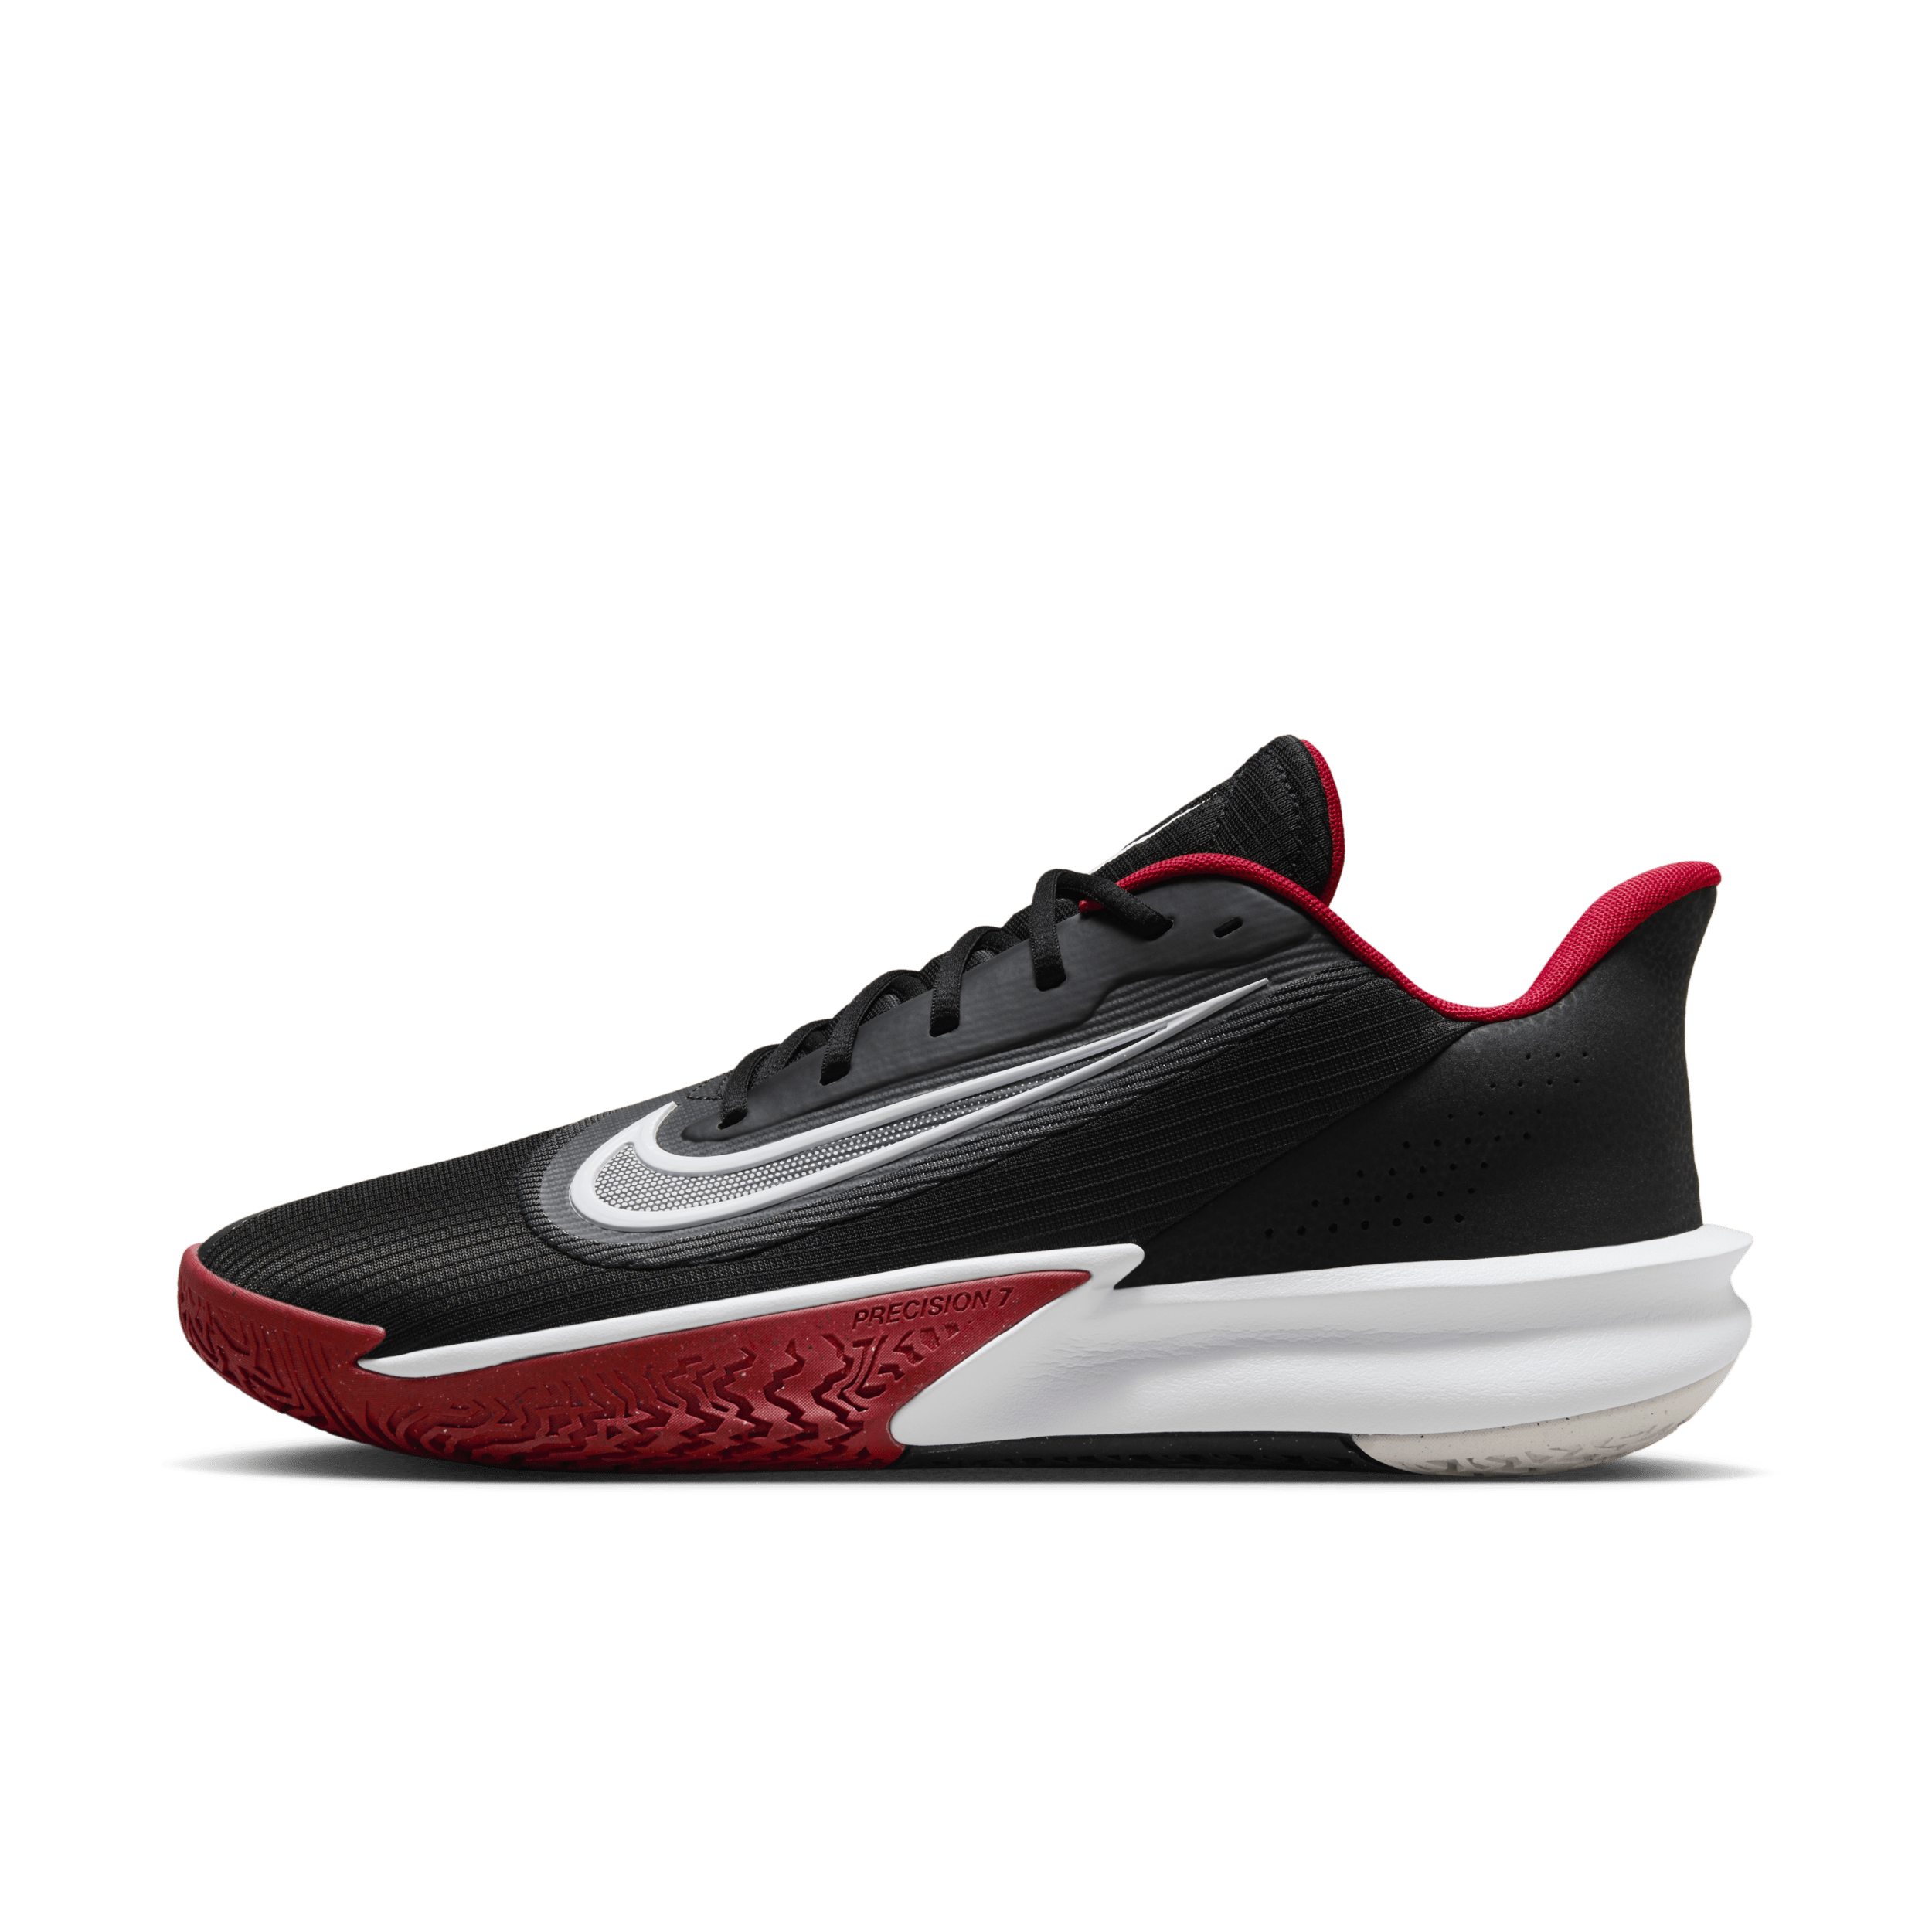 Nike Precision 7 basketbalschoenen voor heren - Zwart